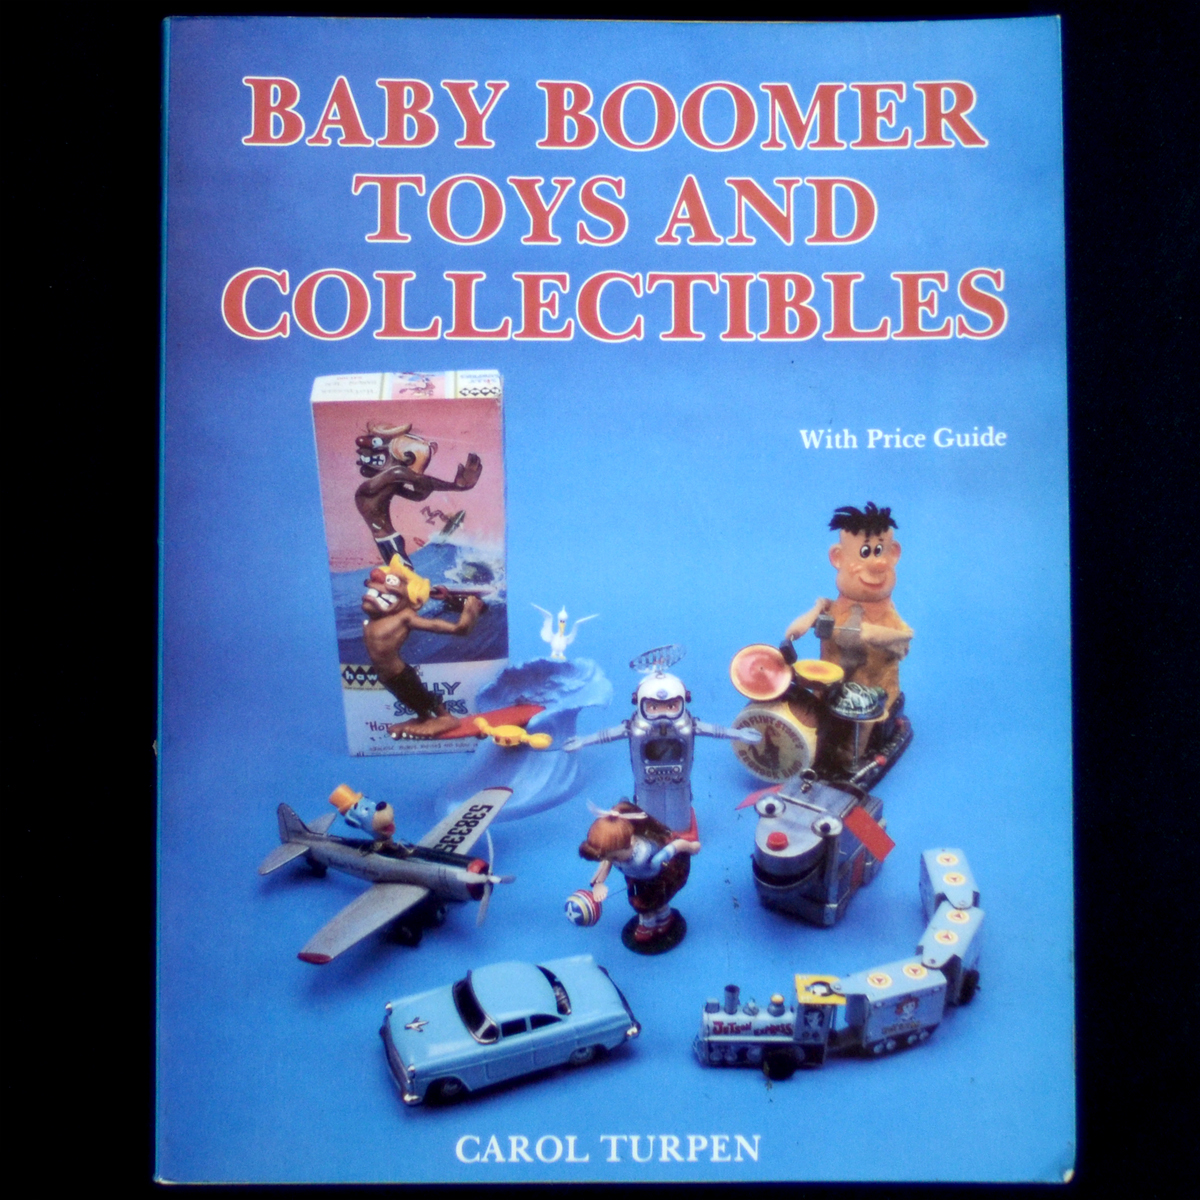 【 洋書 】 ブリキのおもちゃ アンティークおもちゃなどの写真集 ★ Baby Boomer Toys and Collectibles ★